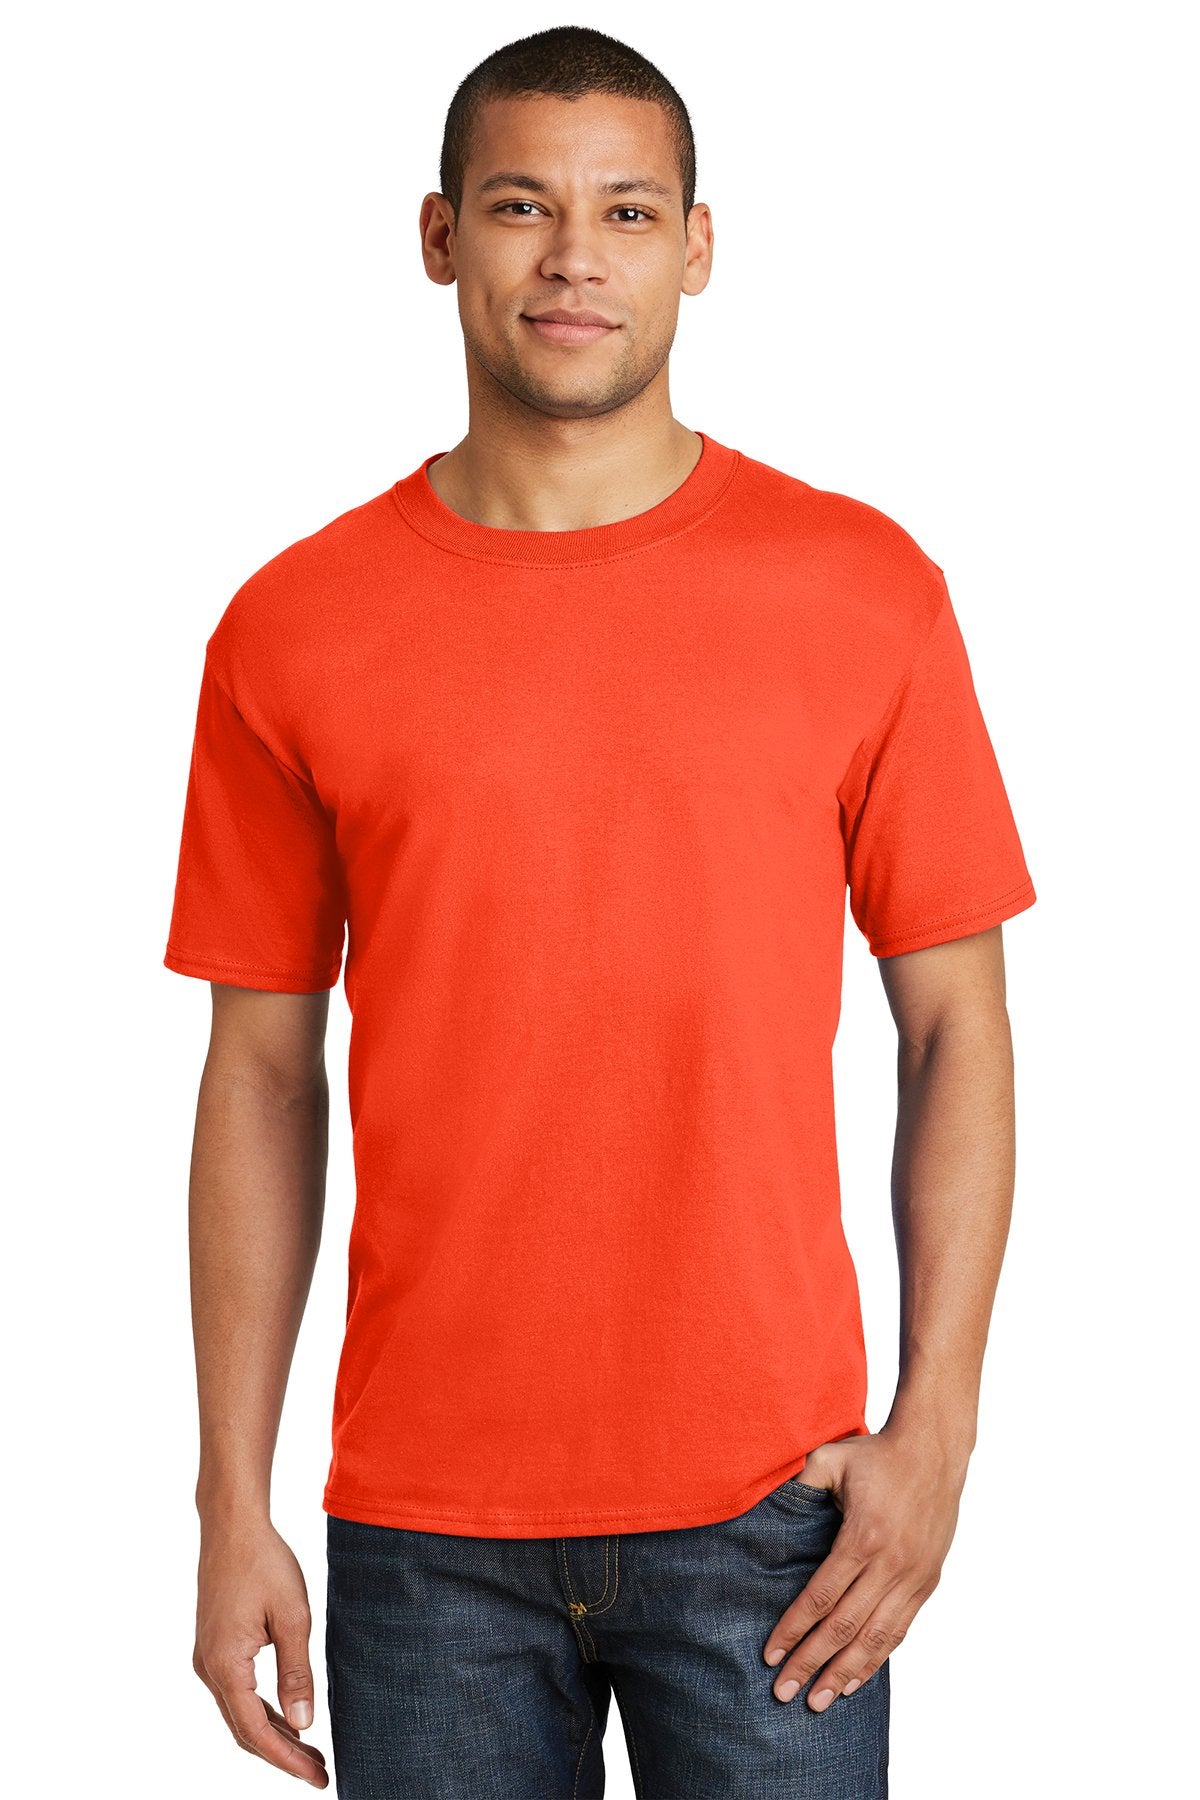 hanes beefy cotton t shirt 5180 orange